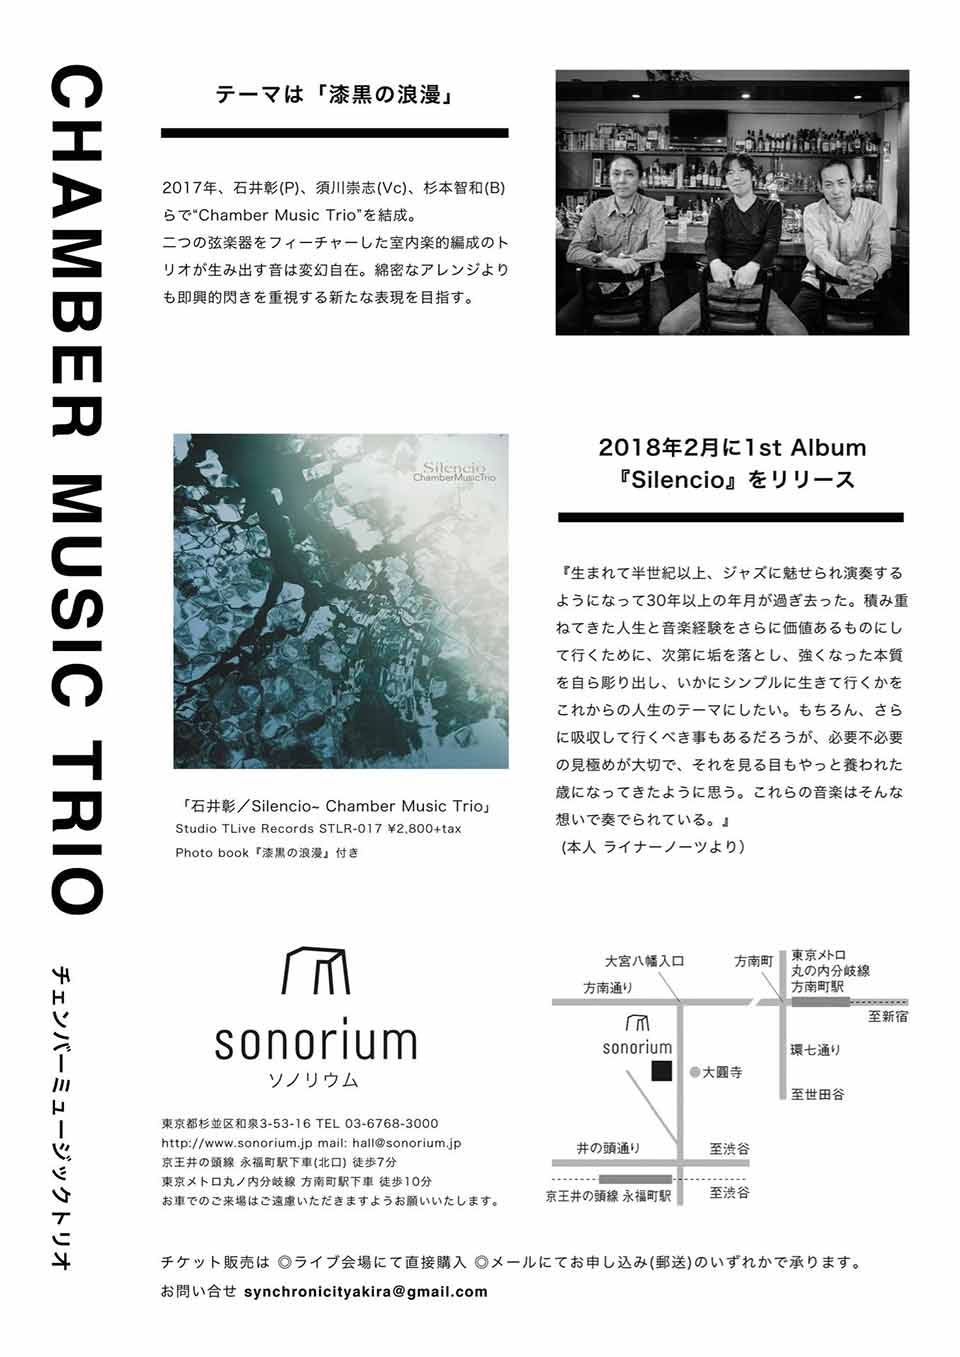 石井彰 Solo Piano & Chamber Music Trio コンサート